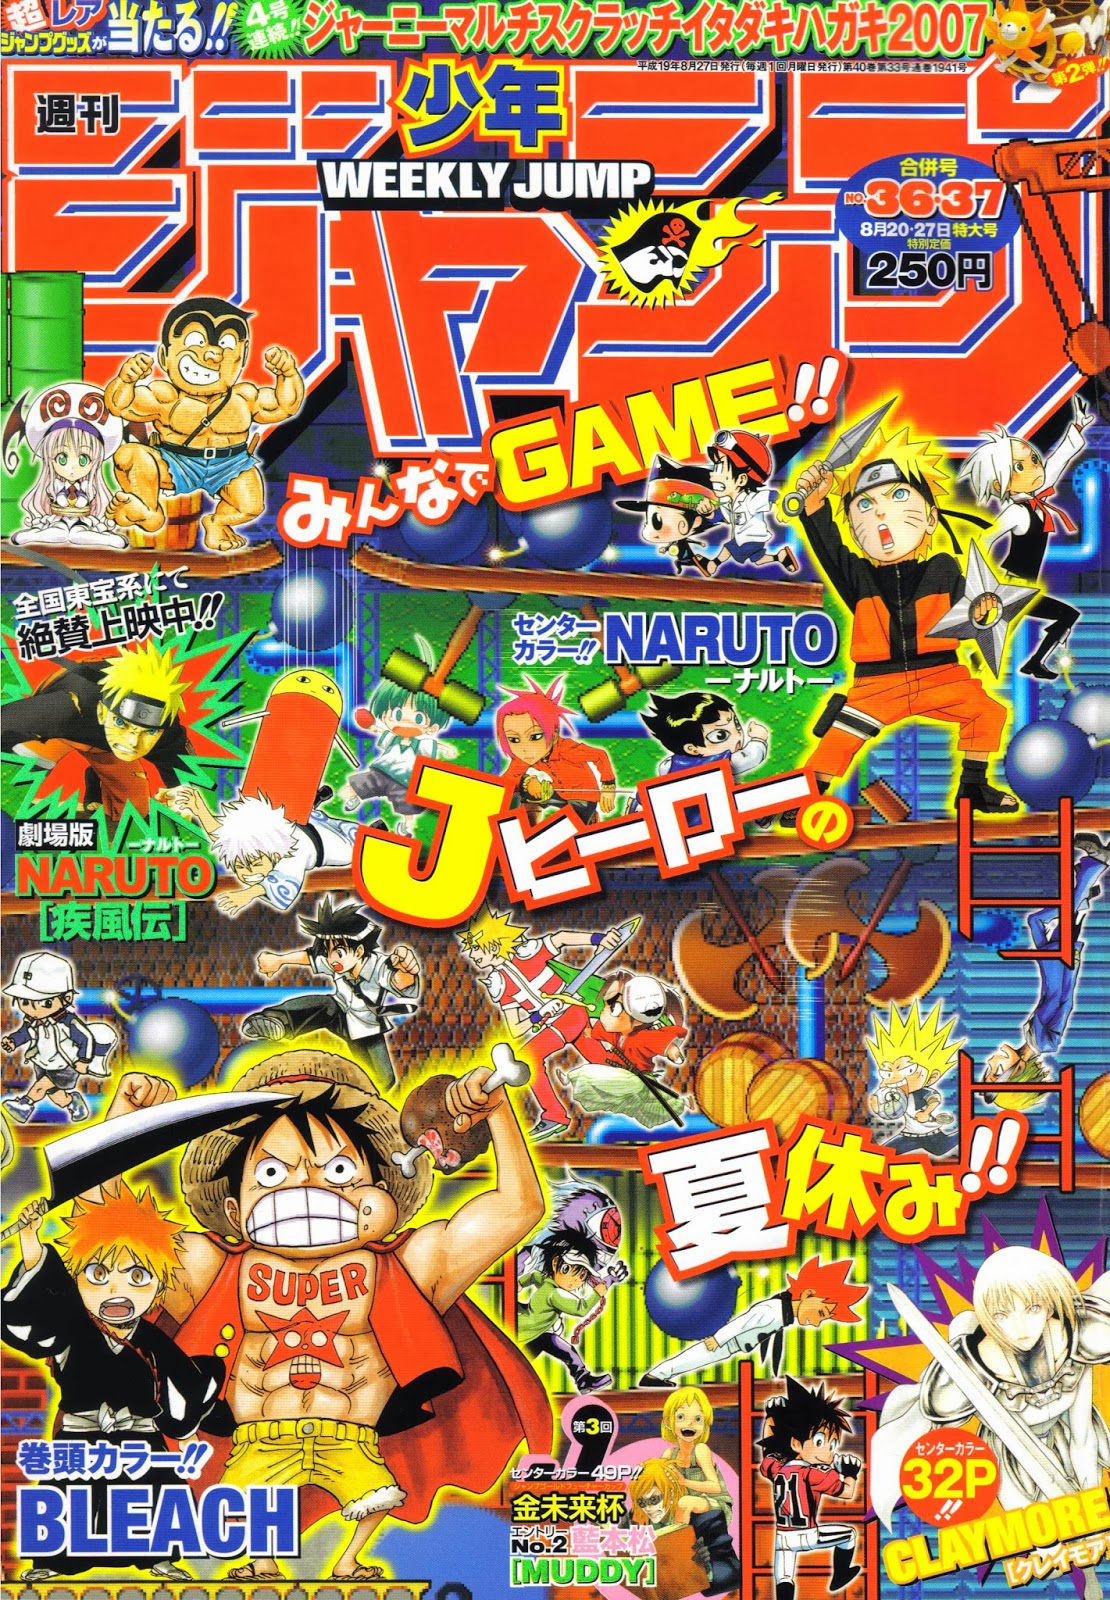 JUMP World - Gekkan Shounen Magazine #01 (04/12/2020) 01. Kuro Ageha c81  (Página principal a color) 02. Sayonara Watashi no Cramer c55 (Capítulo  final) 03. Megumi no Daigo: Kyuukoku no Orange c03